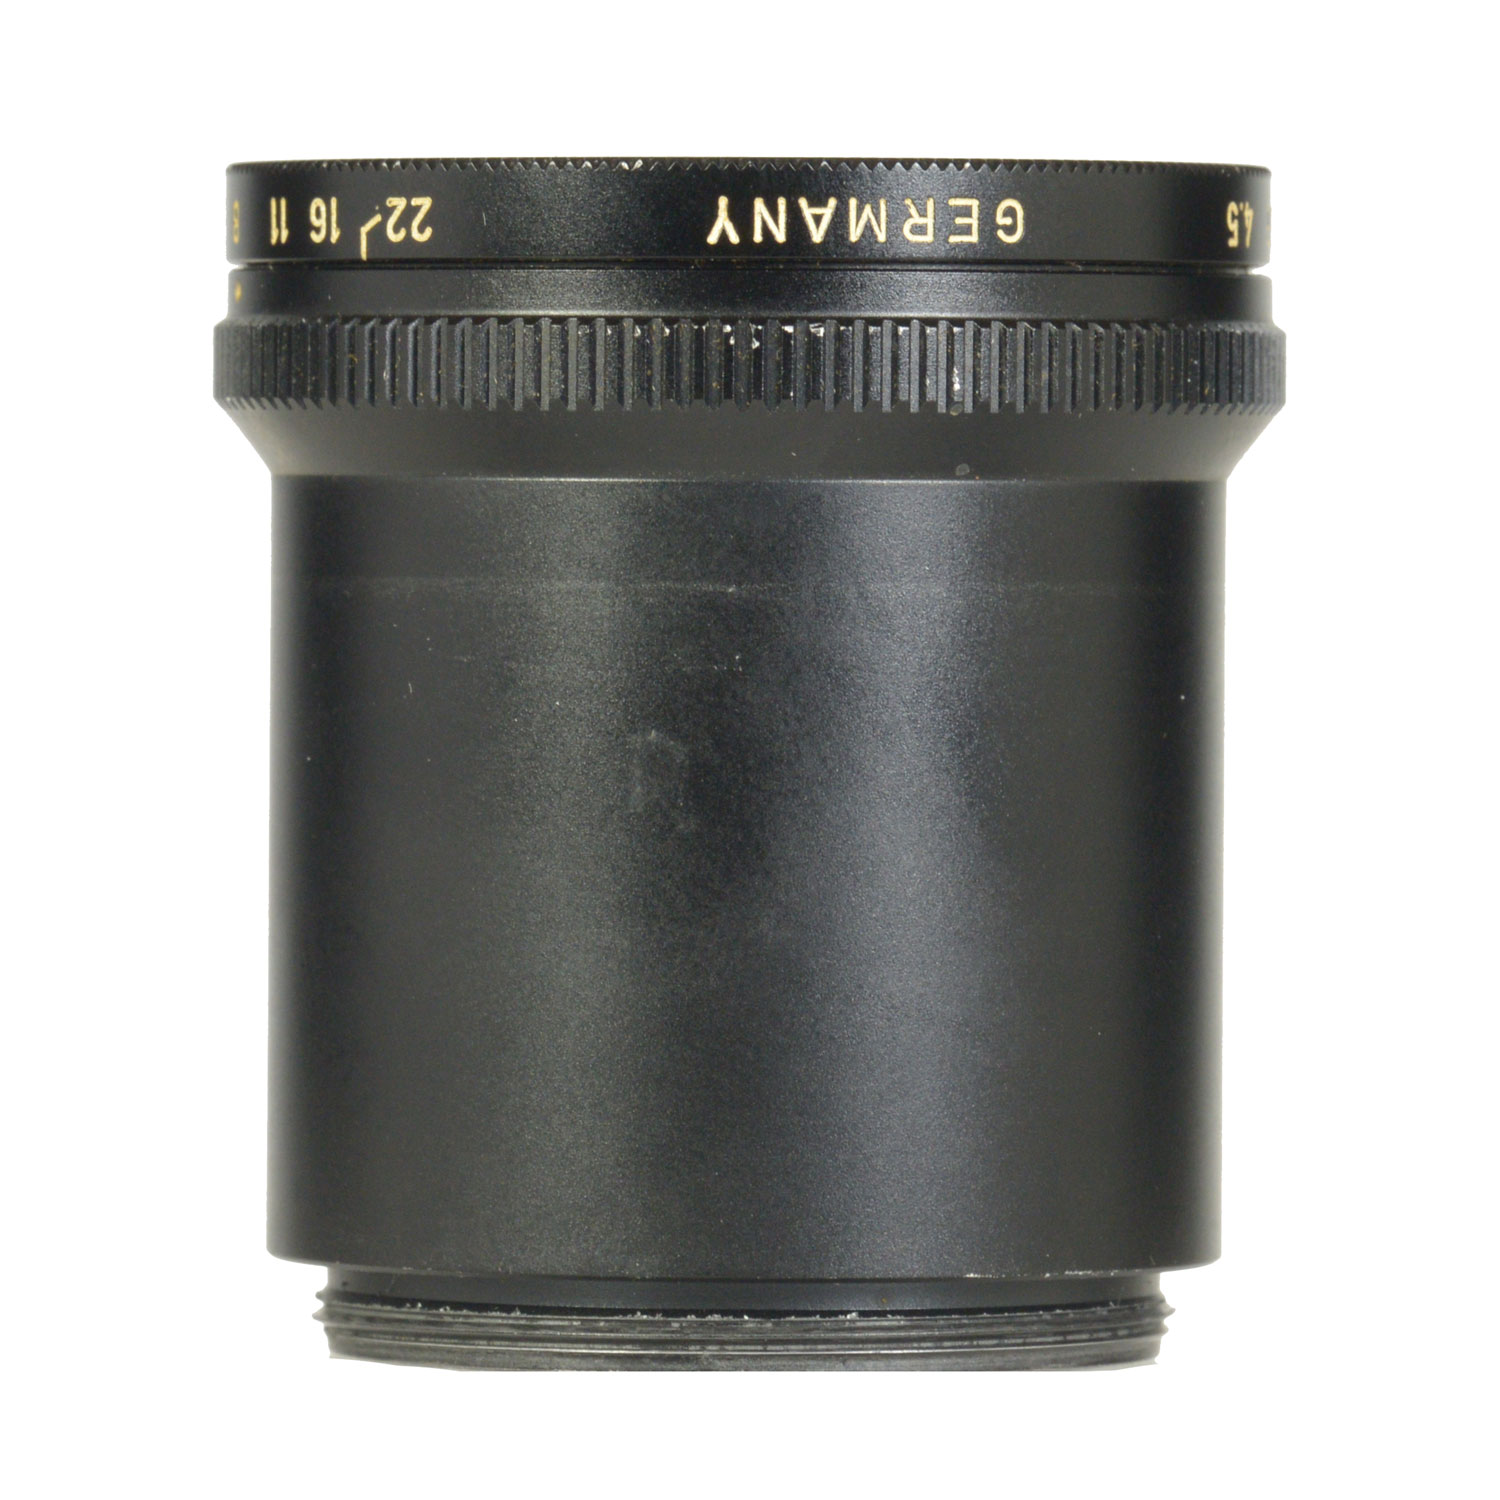 Объектив для фотоувеличителя Leitz Wetzlar Focotar II 60mm f/4.5 (М39) б/у